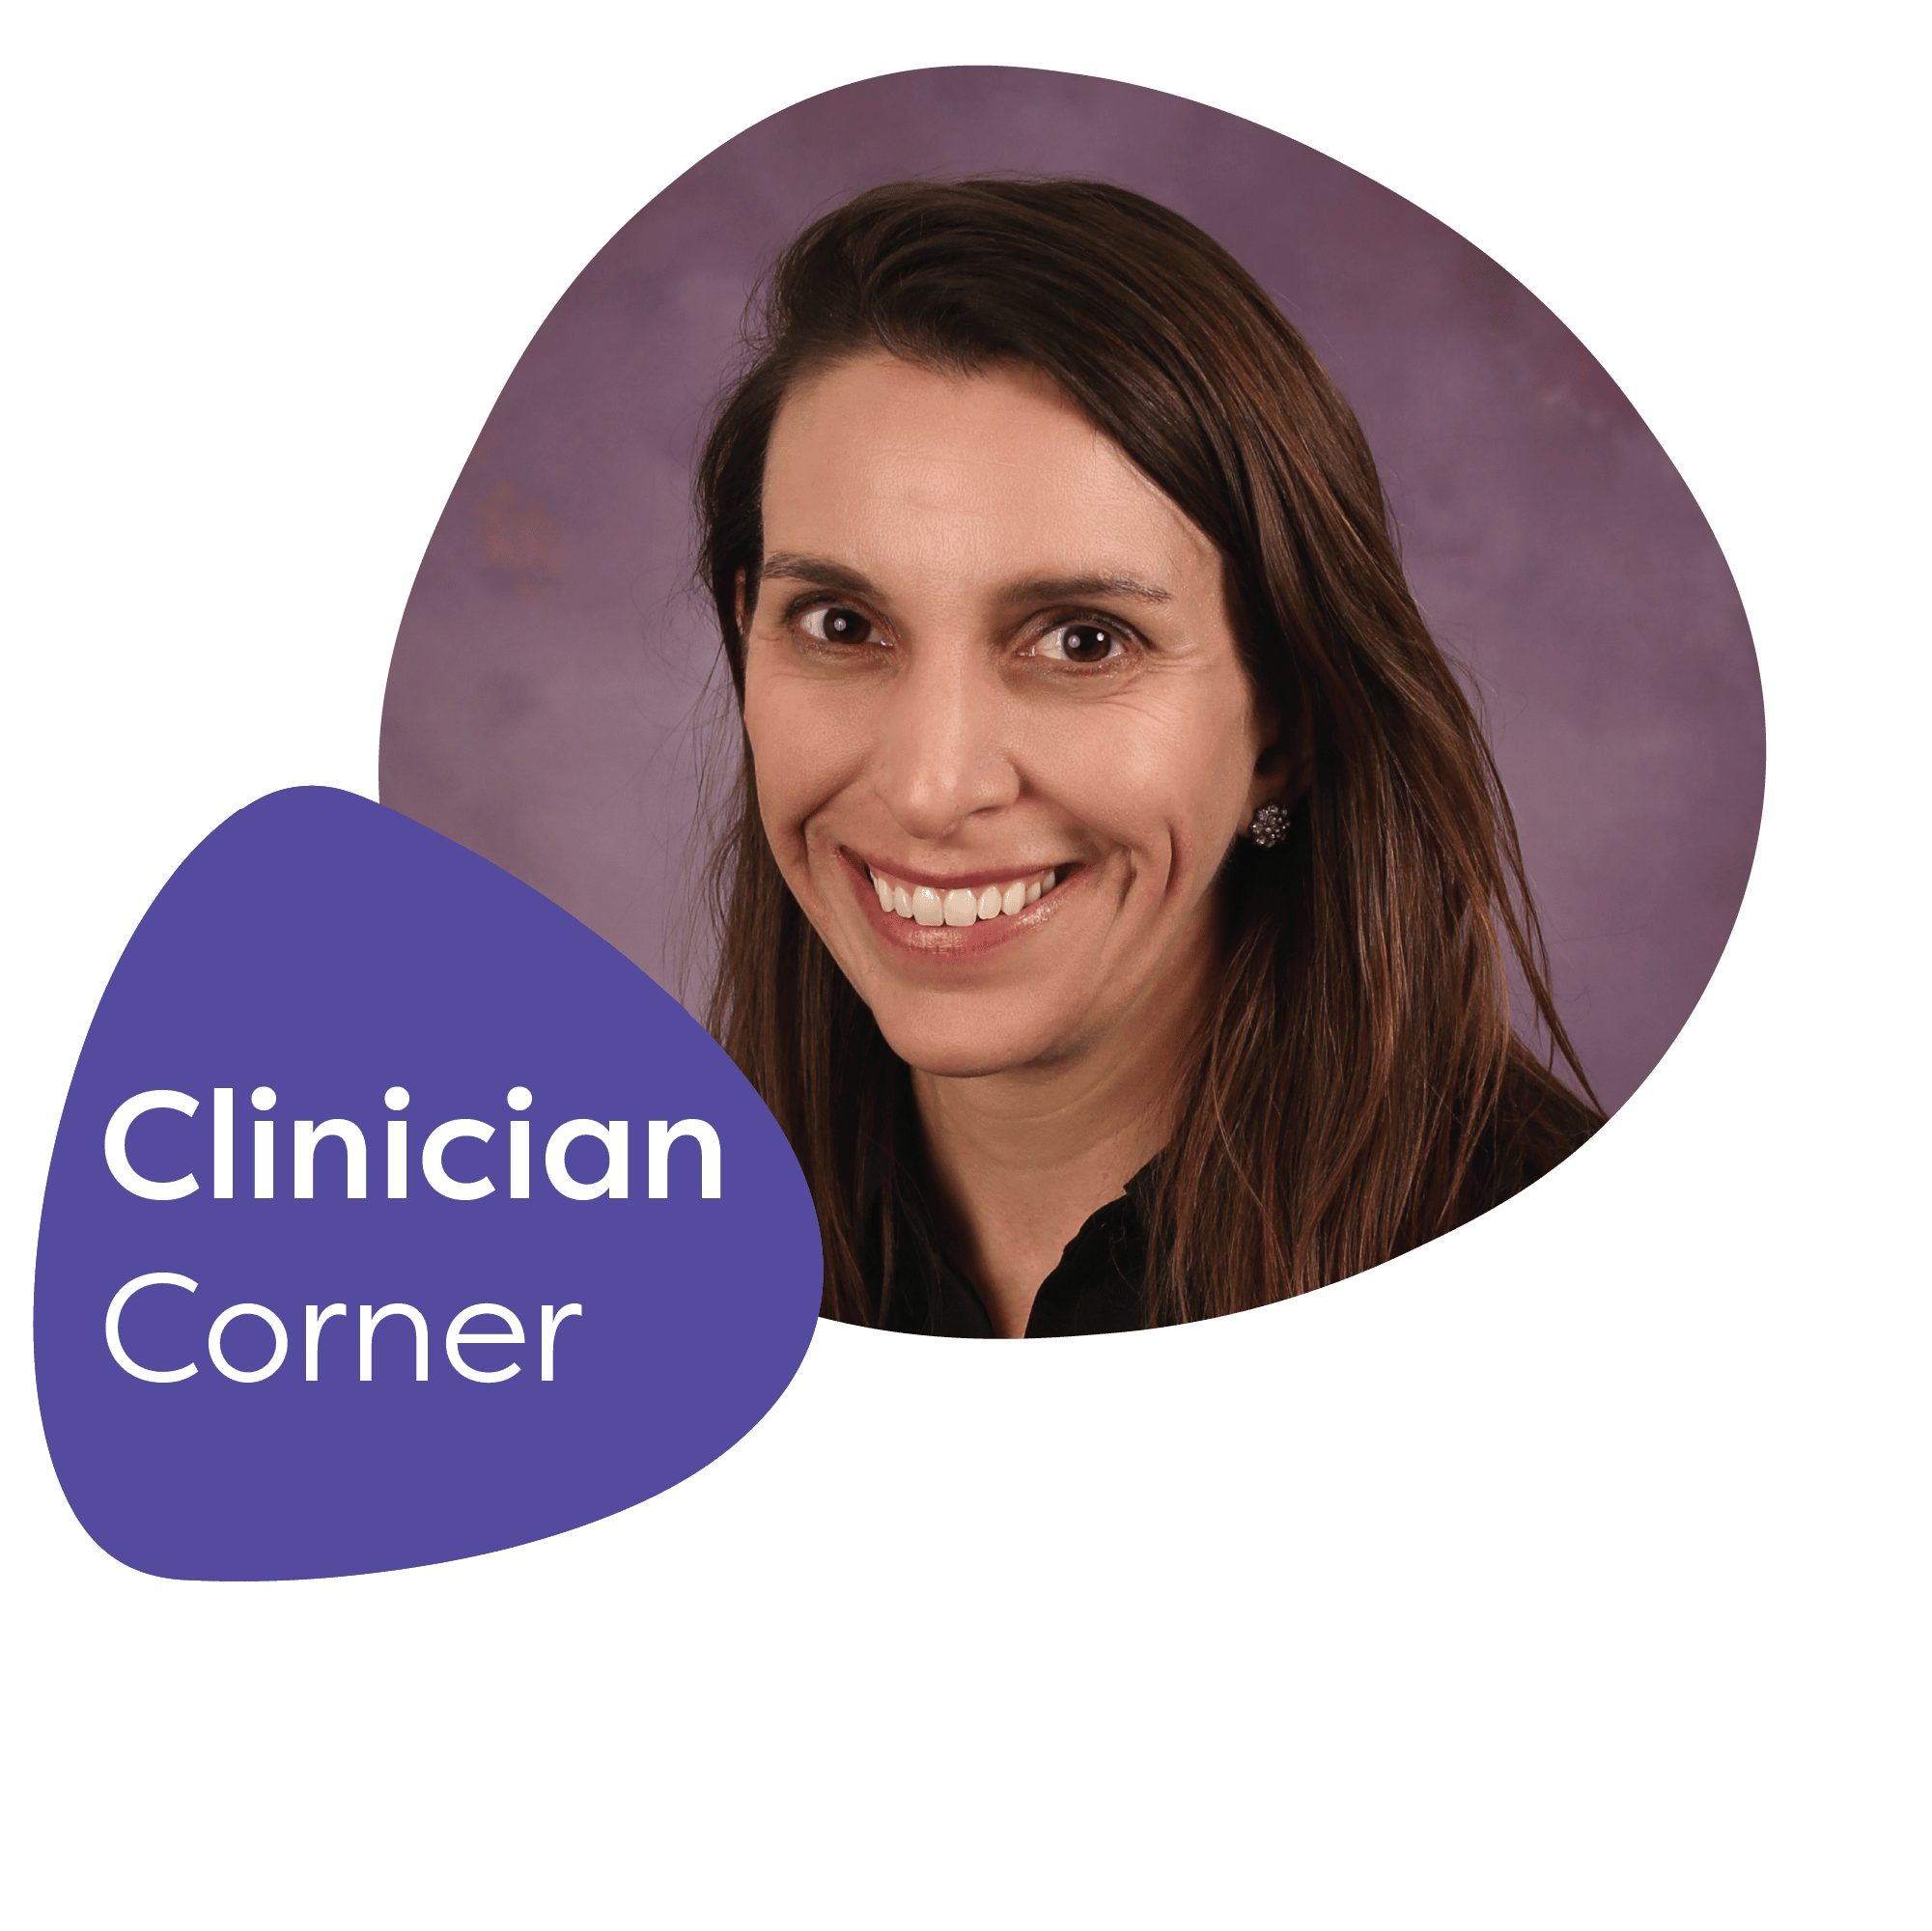 Clinician Corner: Meet Dr. Jessica Jeffrey, DO